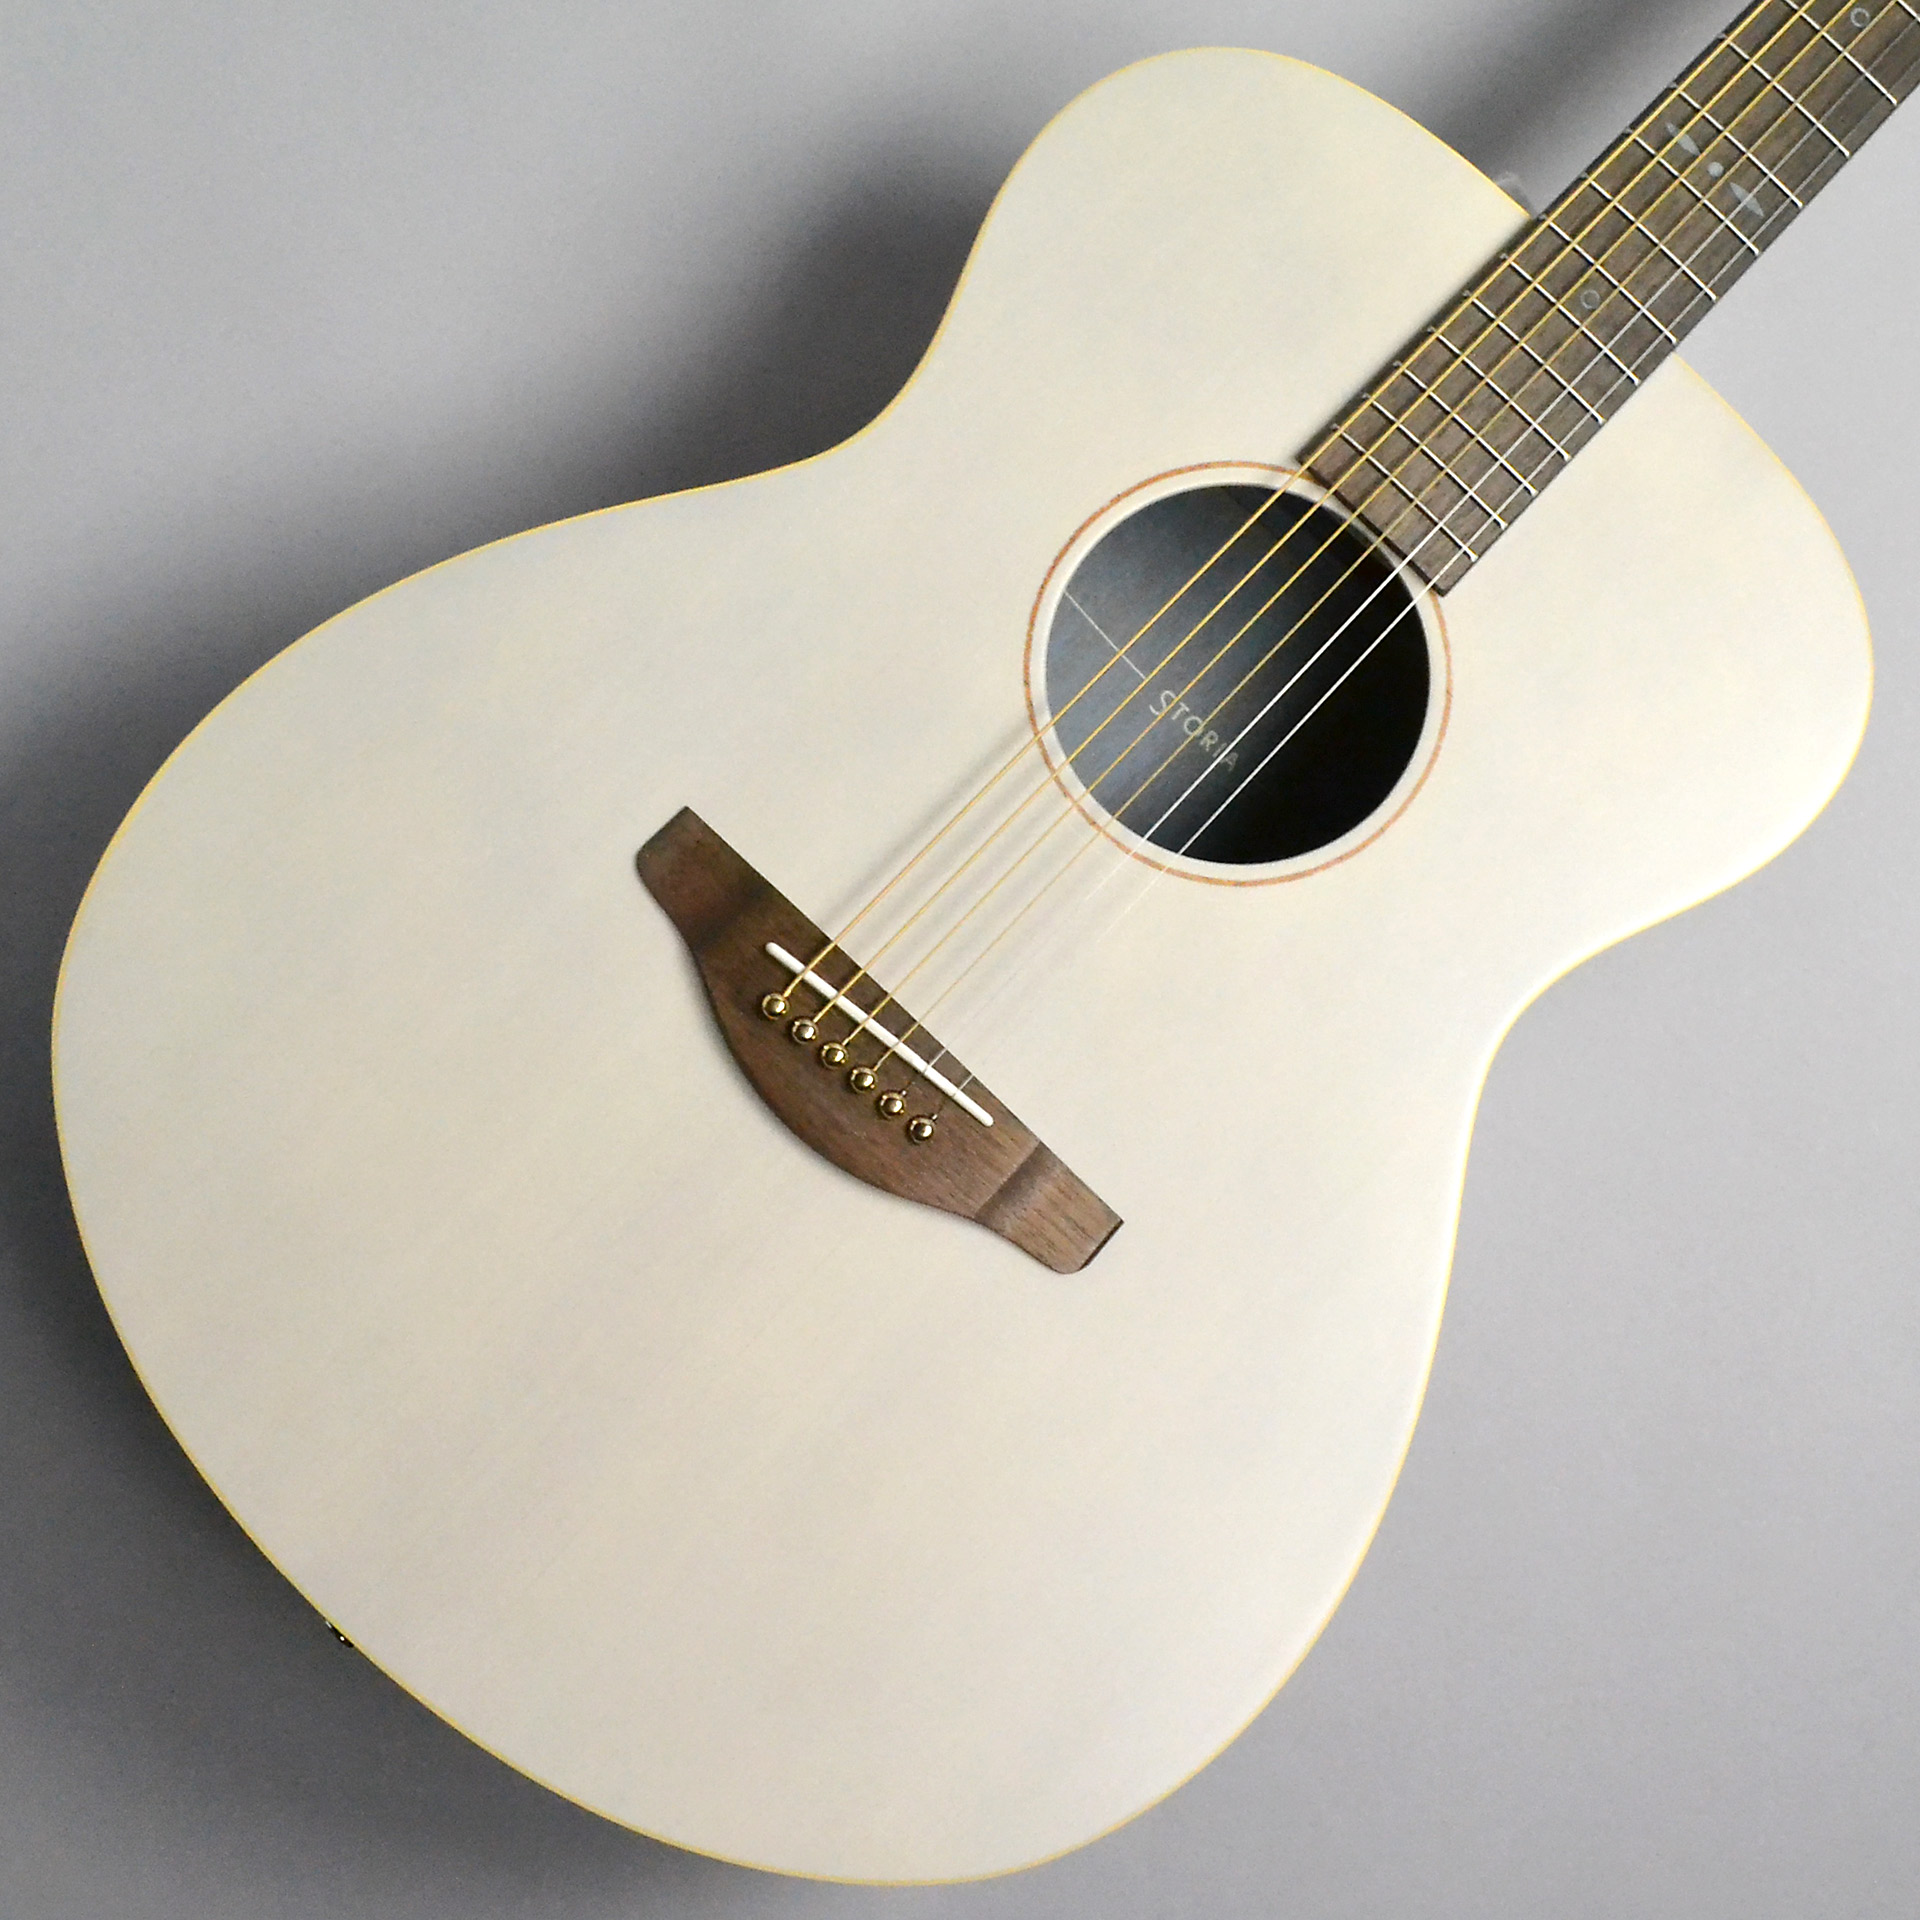 アコギギター - アコースティックギター